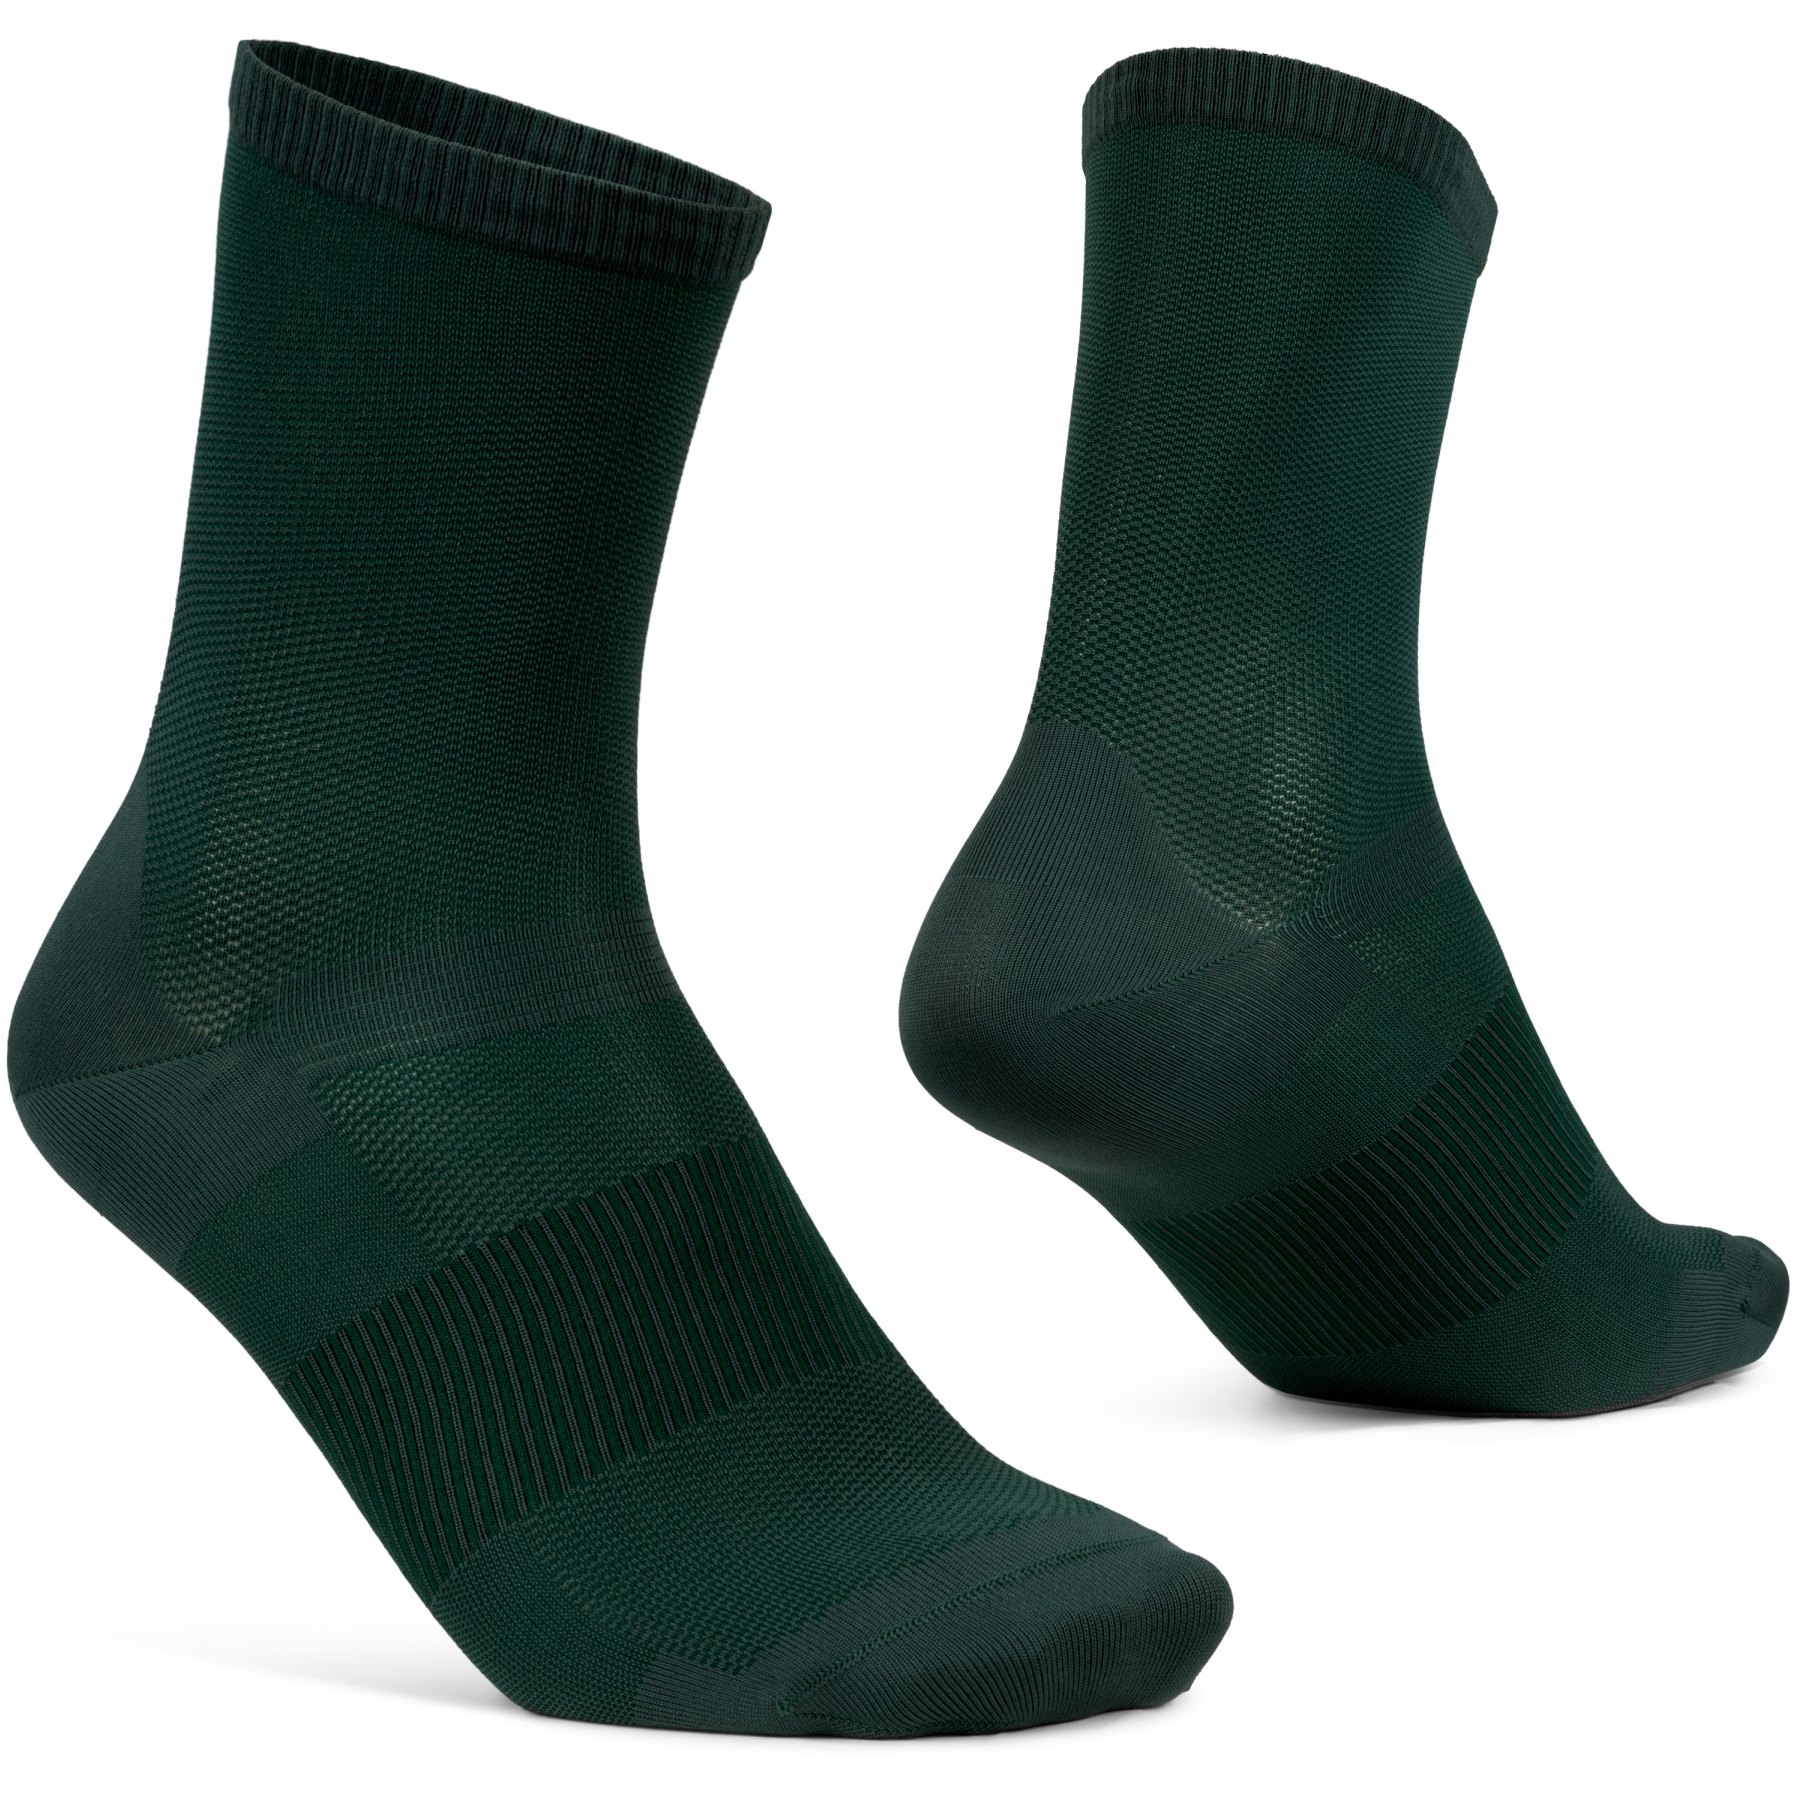 Produktbild von GripGrab Lightweight Airflow Socken - Grün